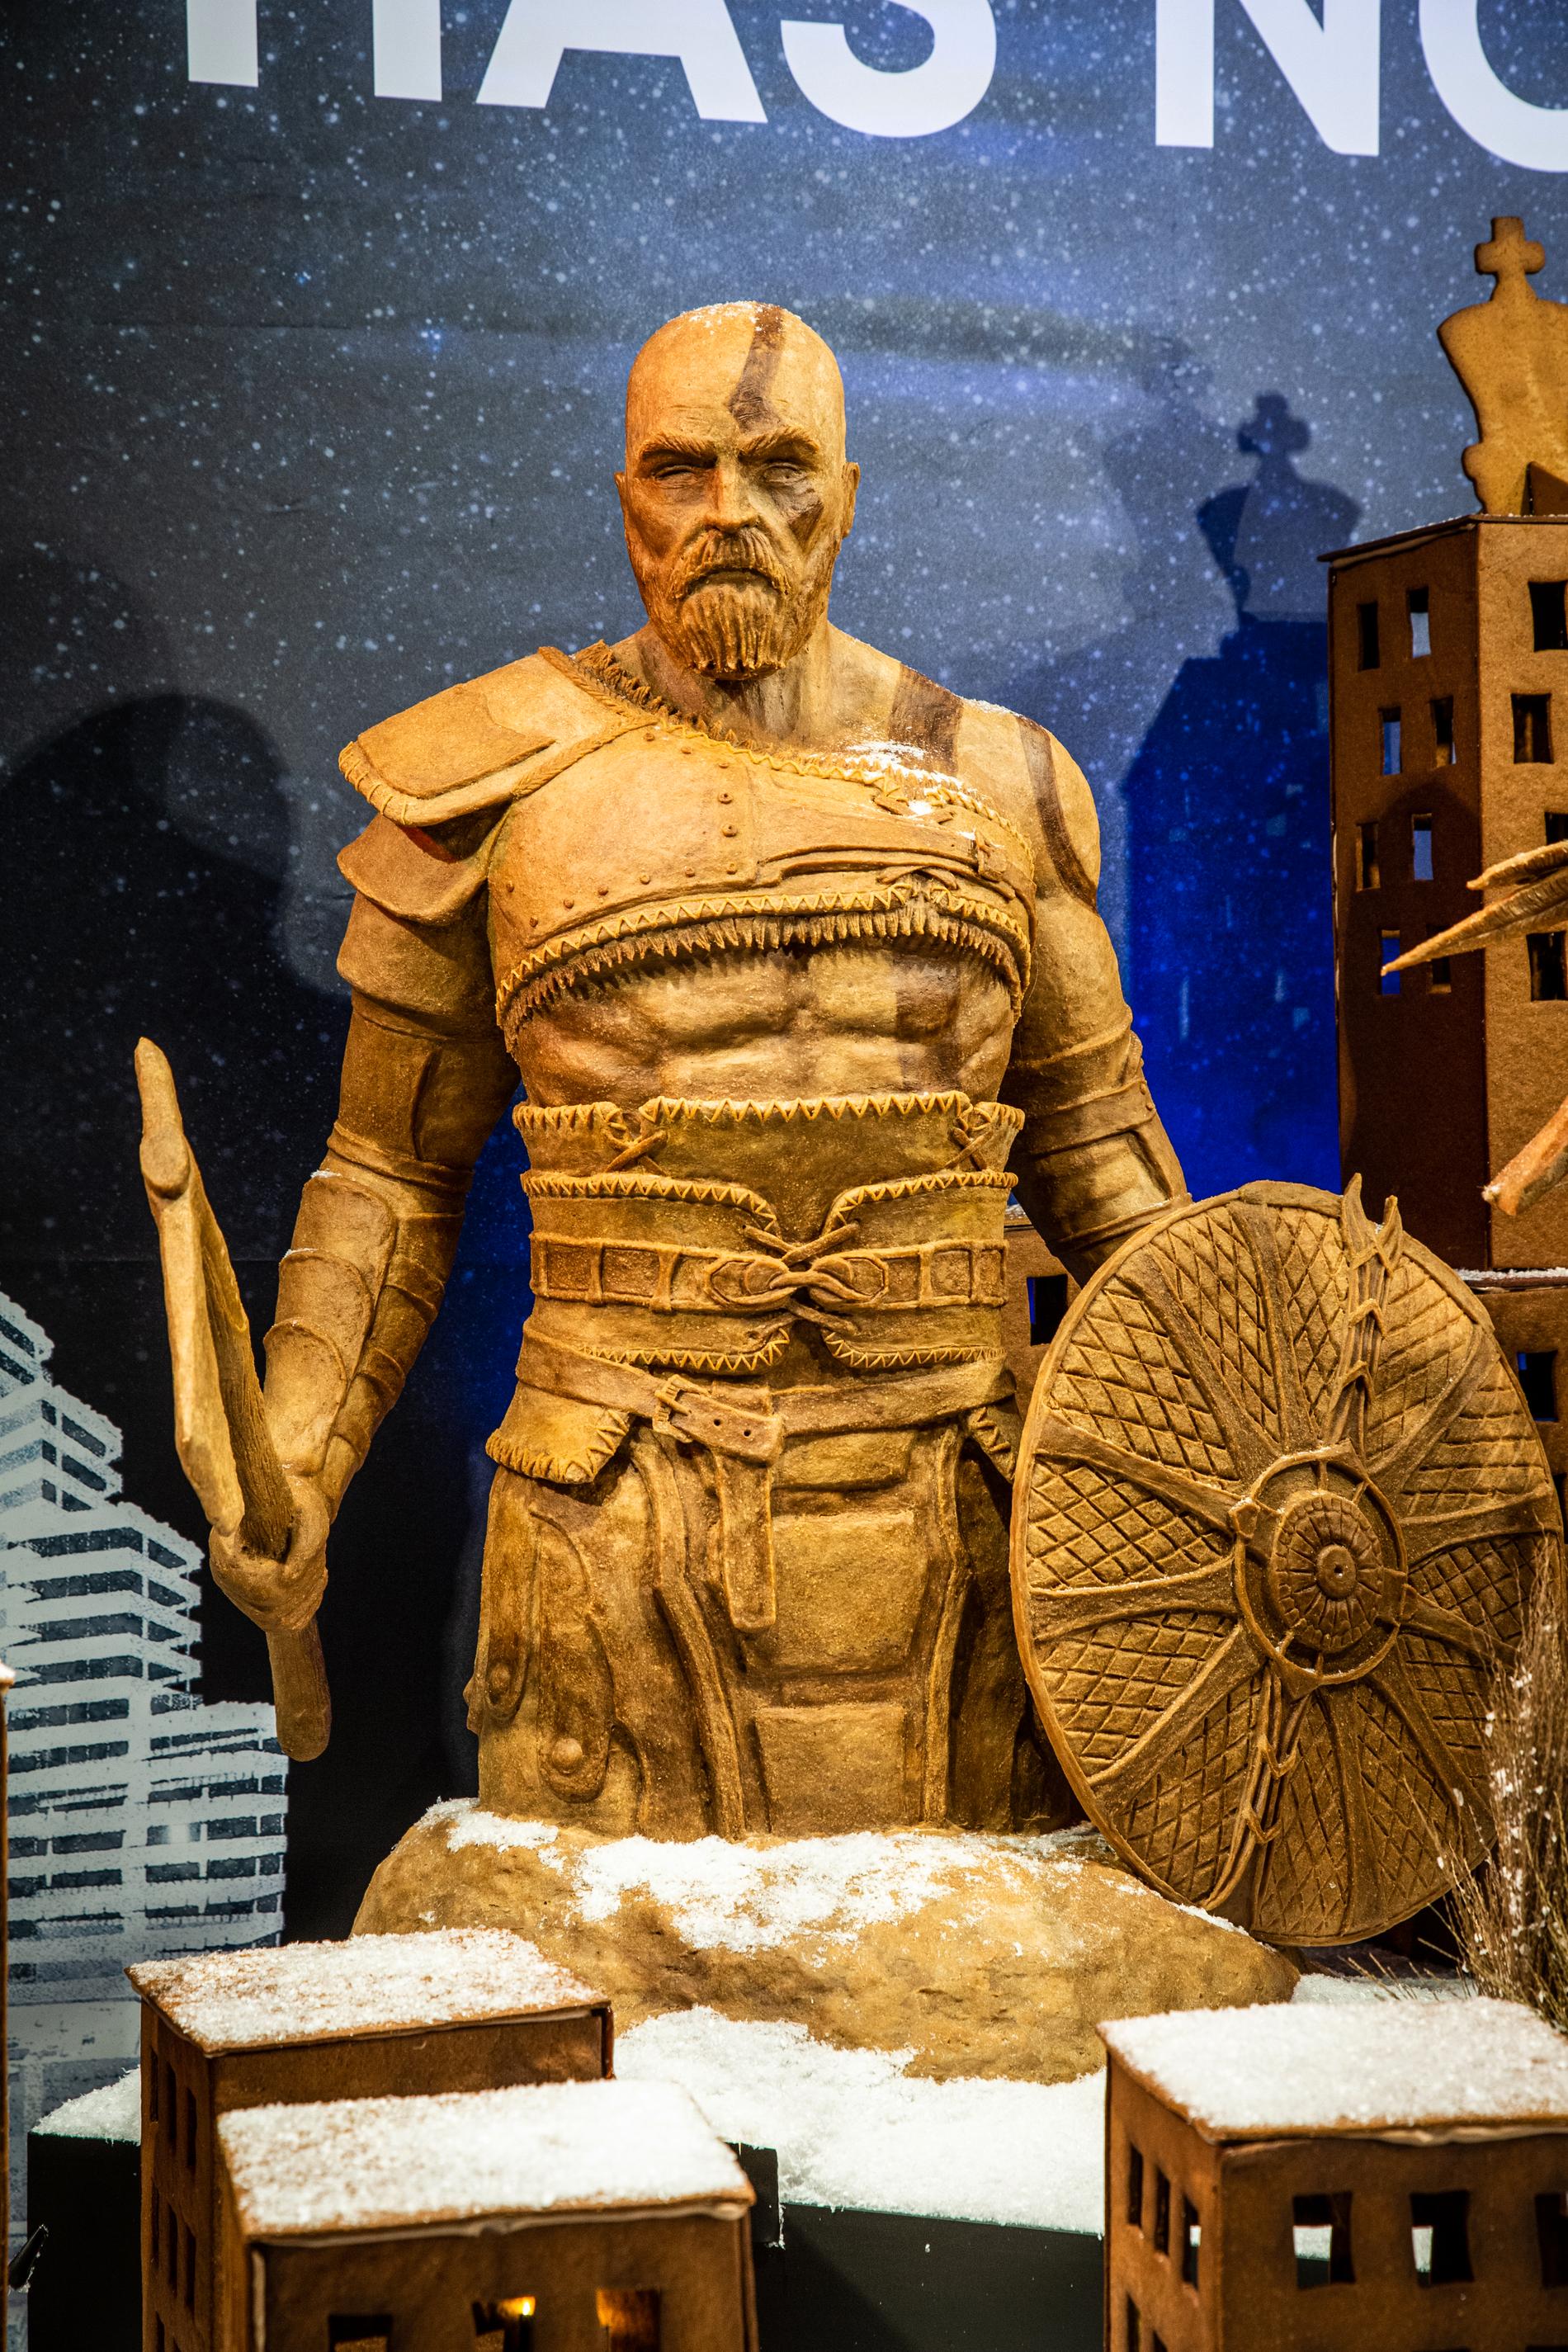 Pepparkakskonst i form av Kratos från ”God of war”.